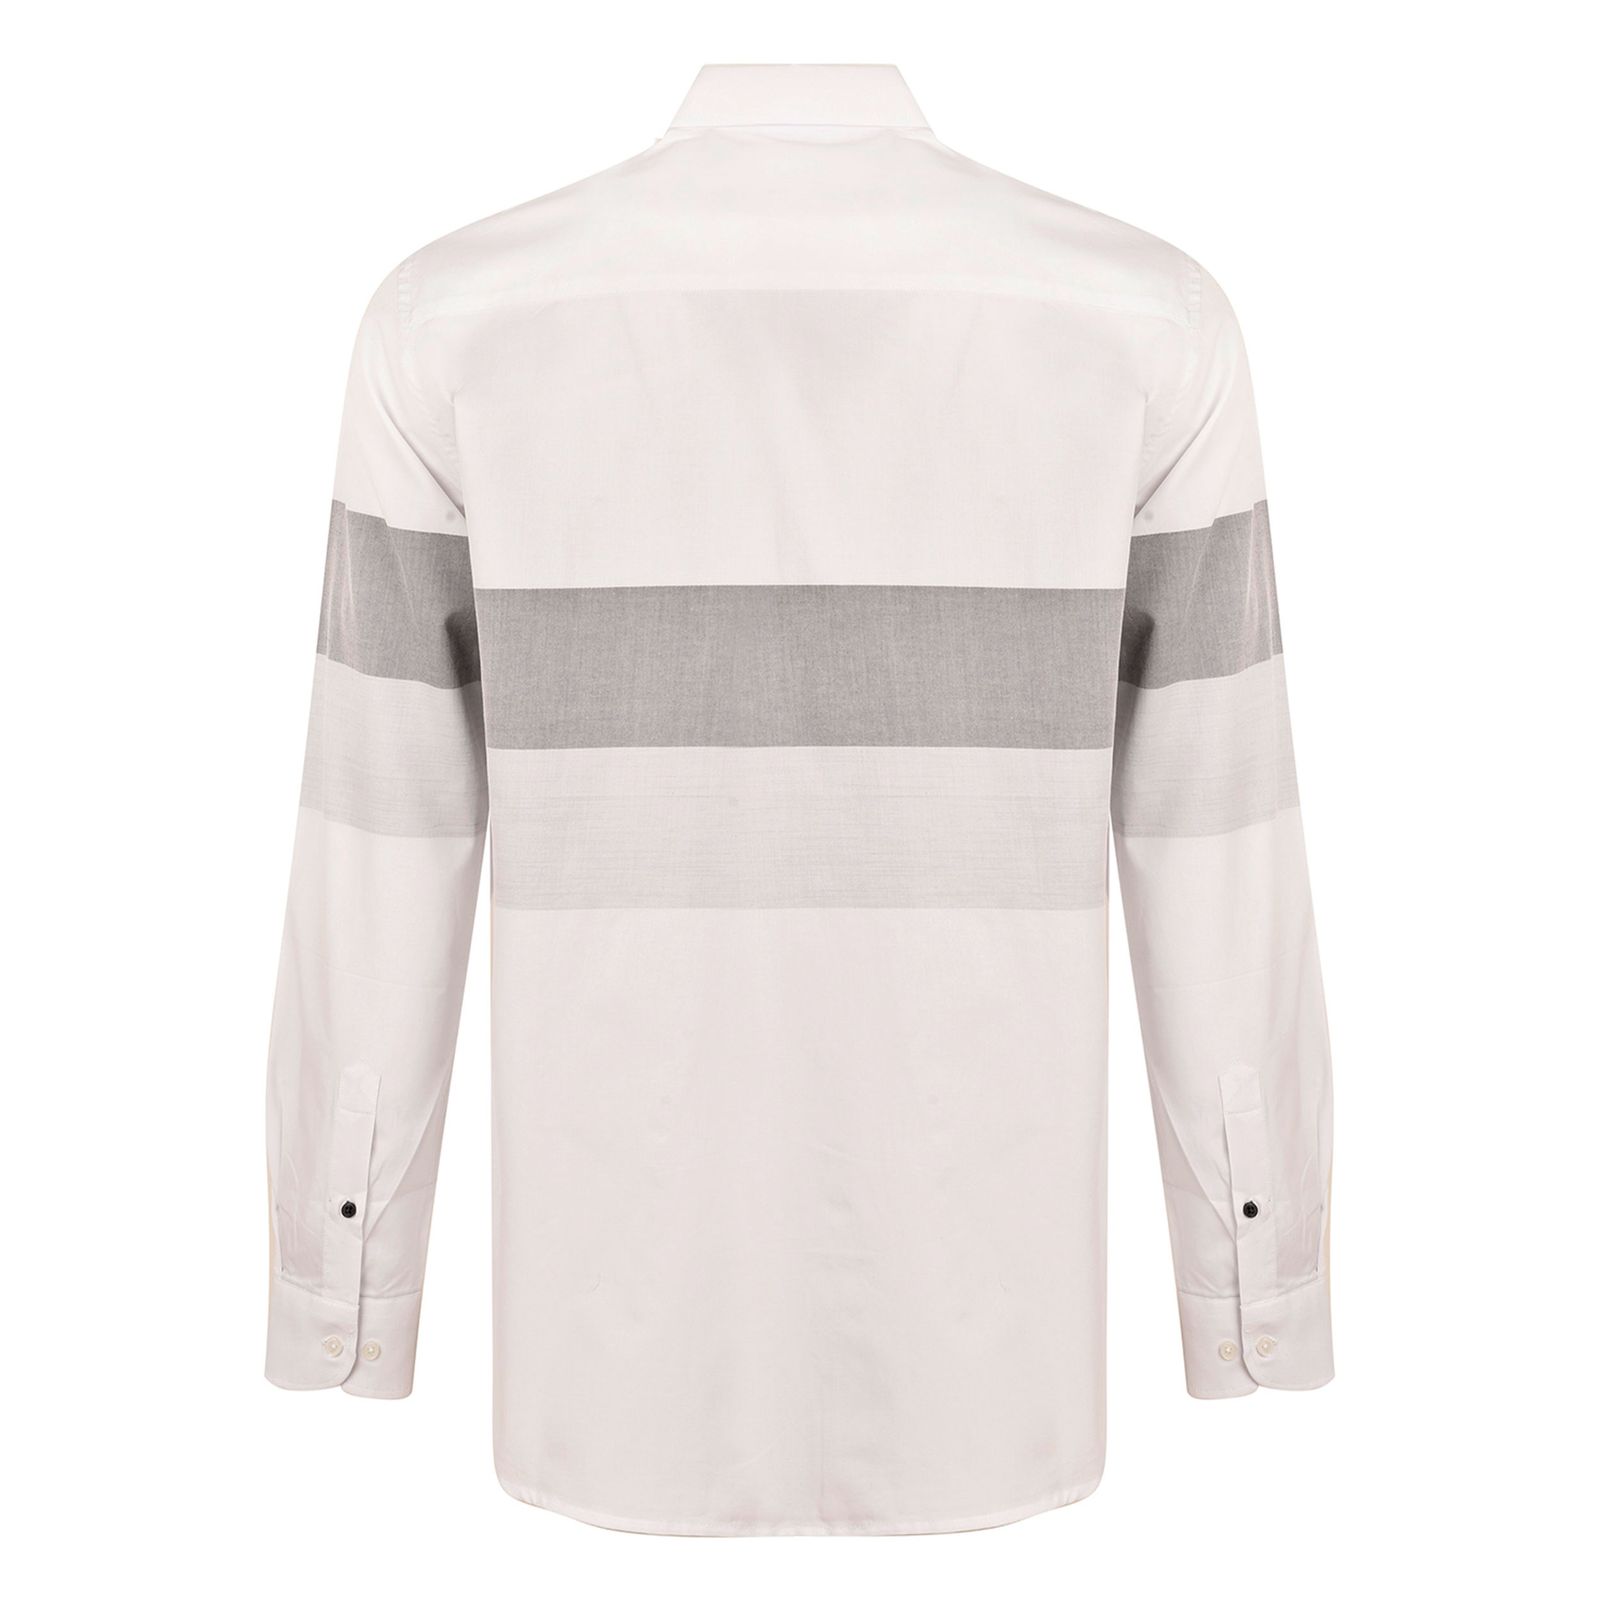 پیراهن آستین بلند مردانه بادی اسپینر مدل 3996 کد 1 رنگ سفید -  - 3